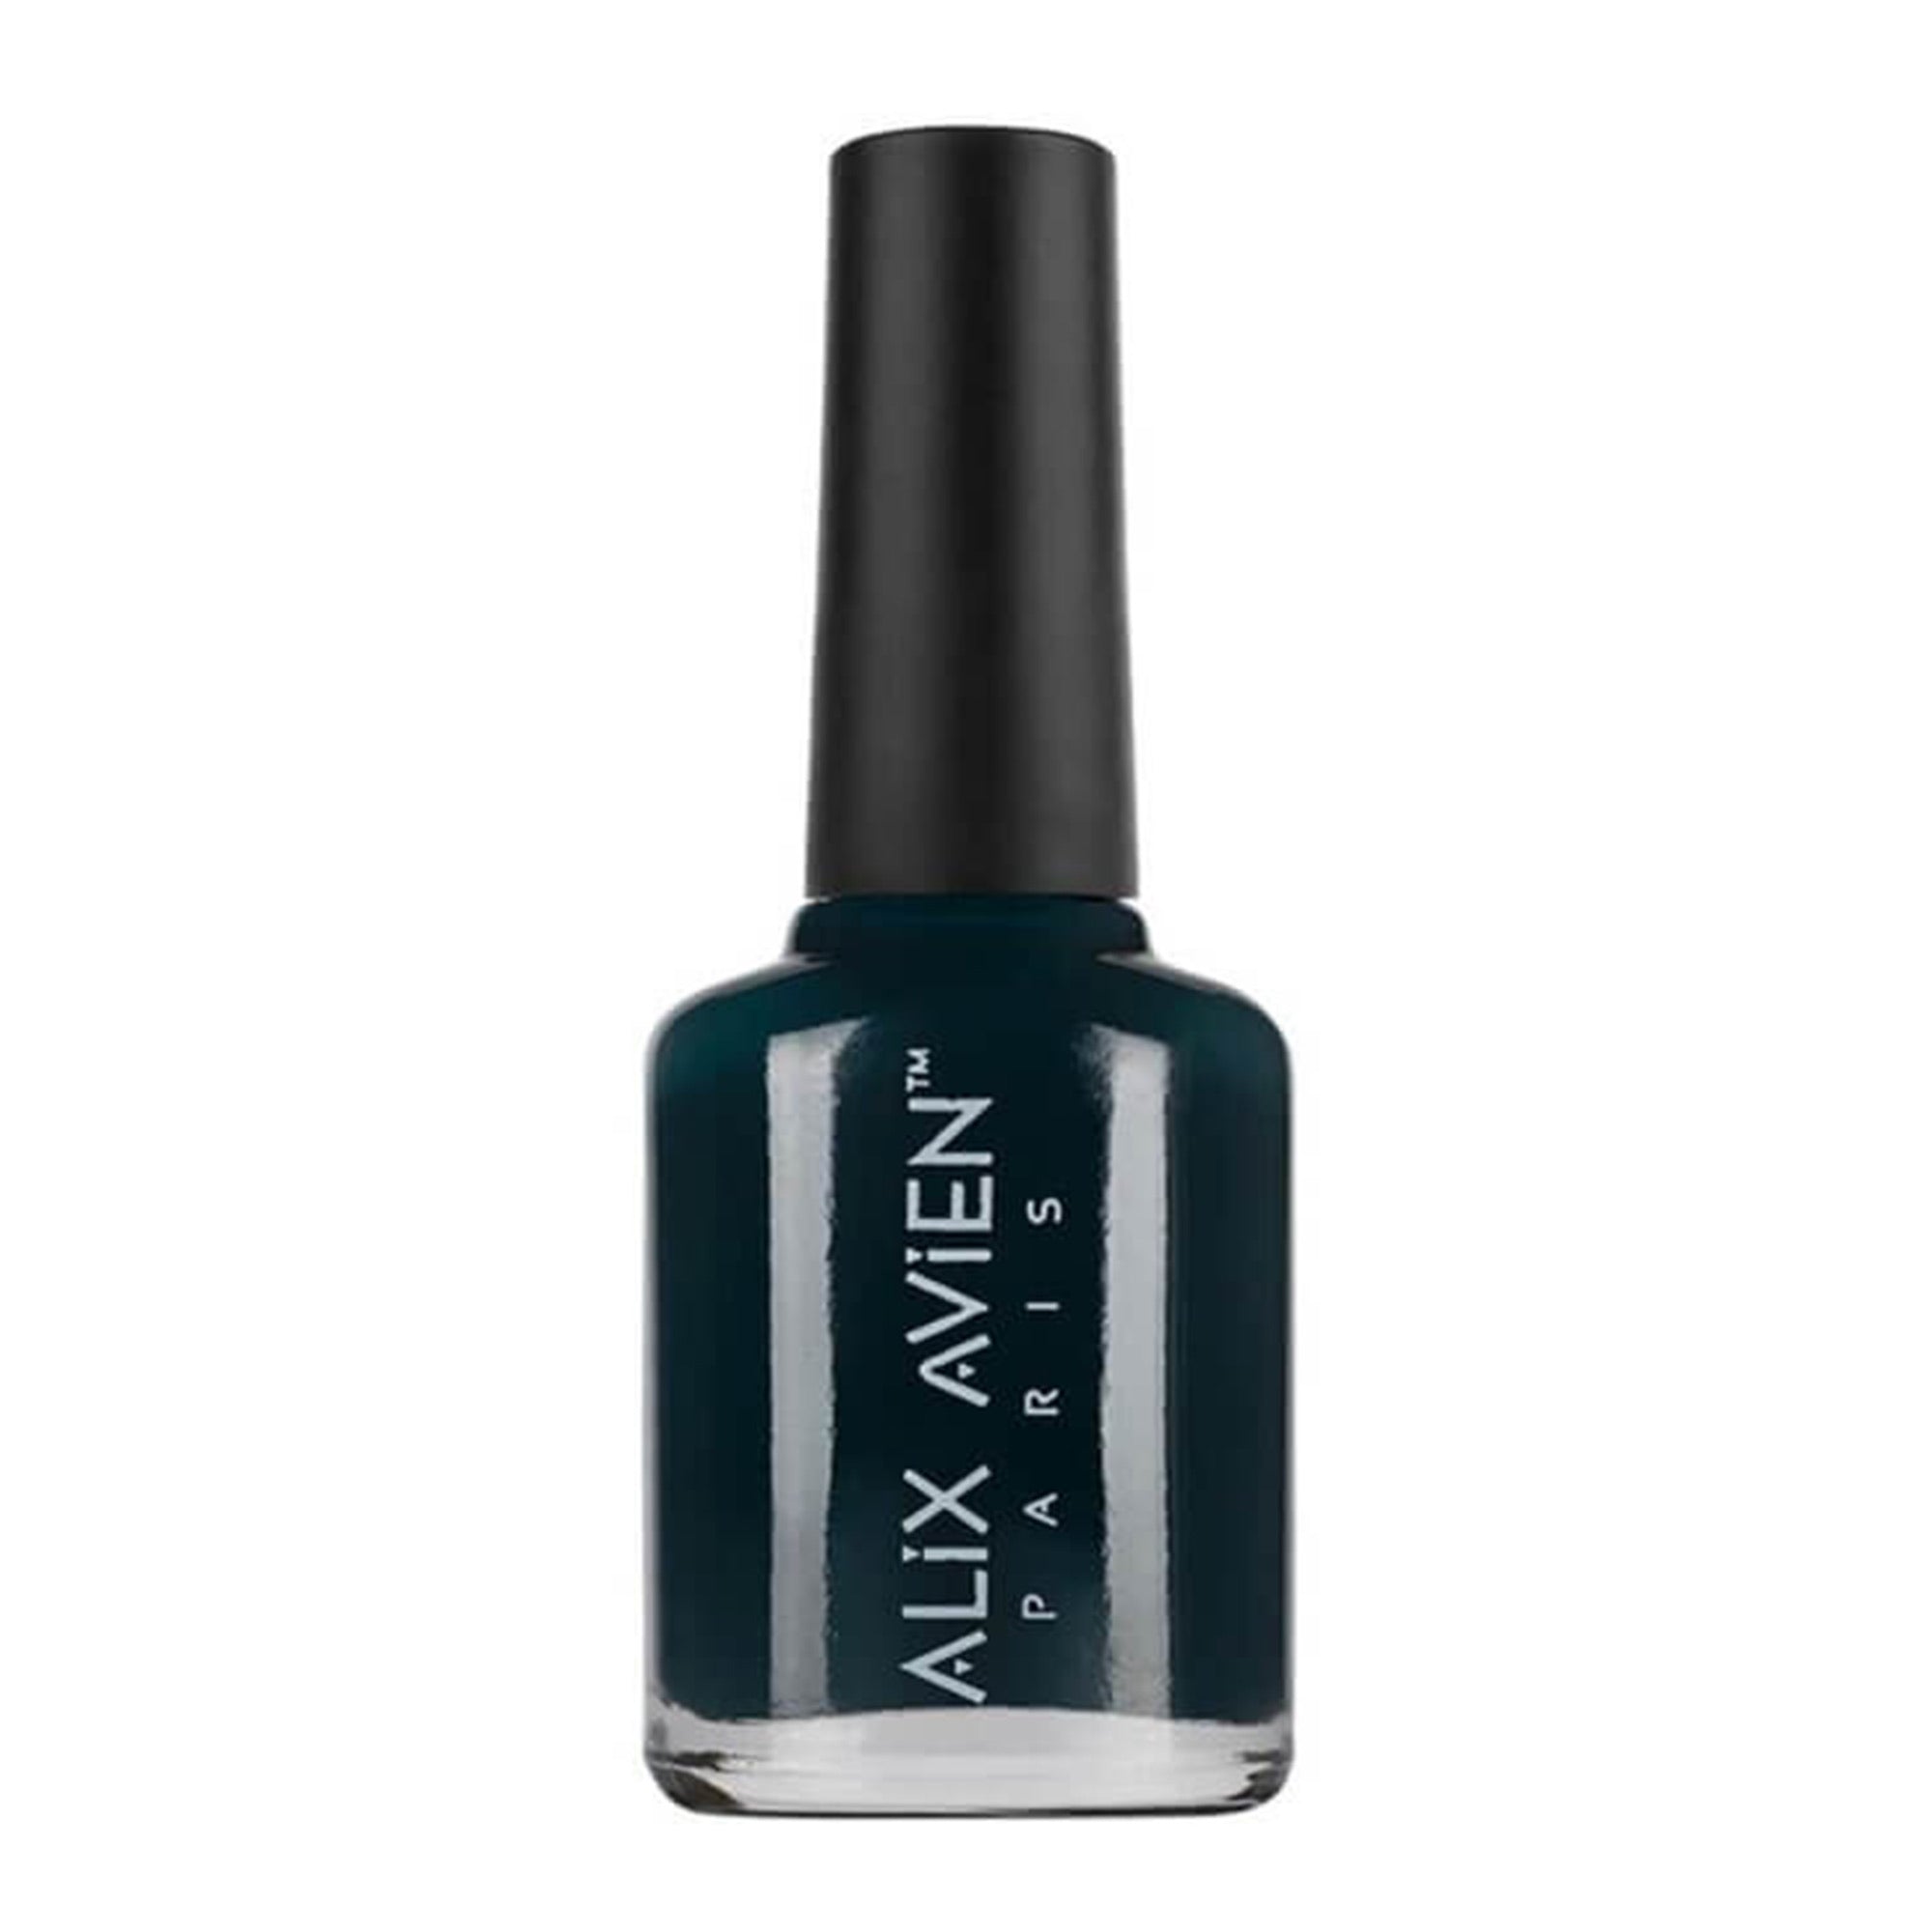 Alix Avien - Nail Polish No.26 (Dark Ocean Green)